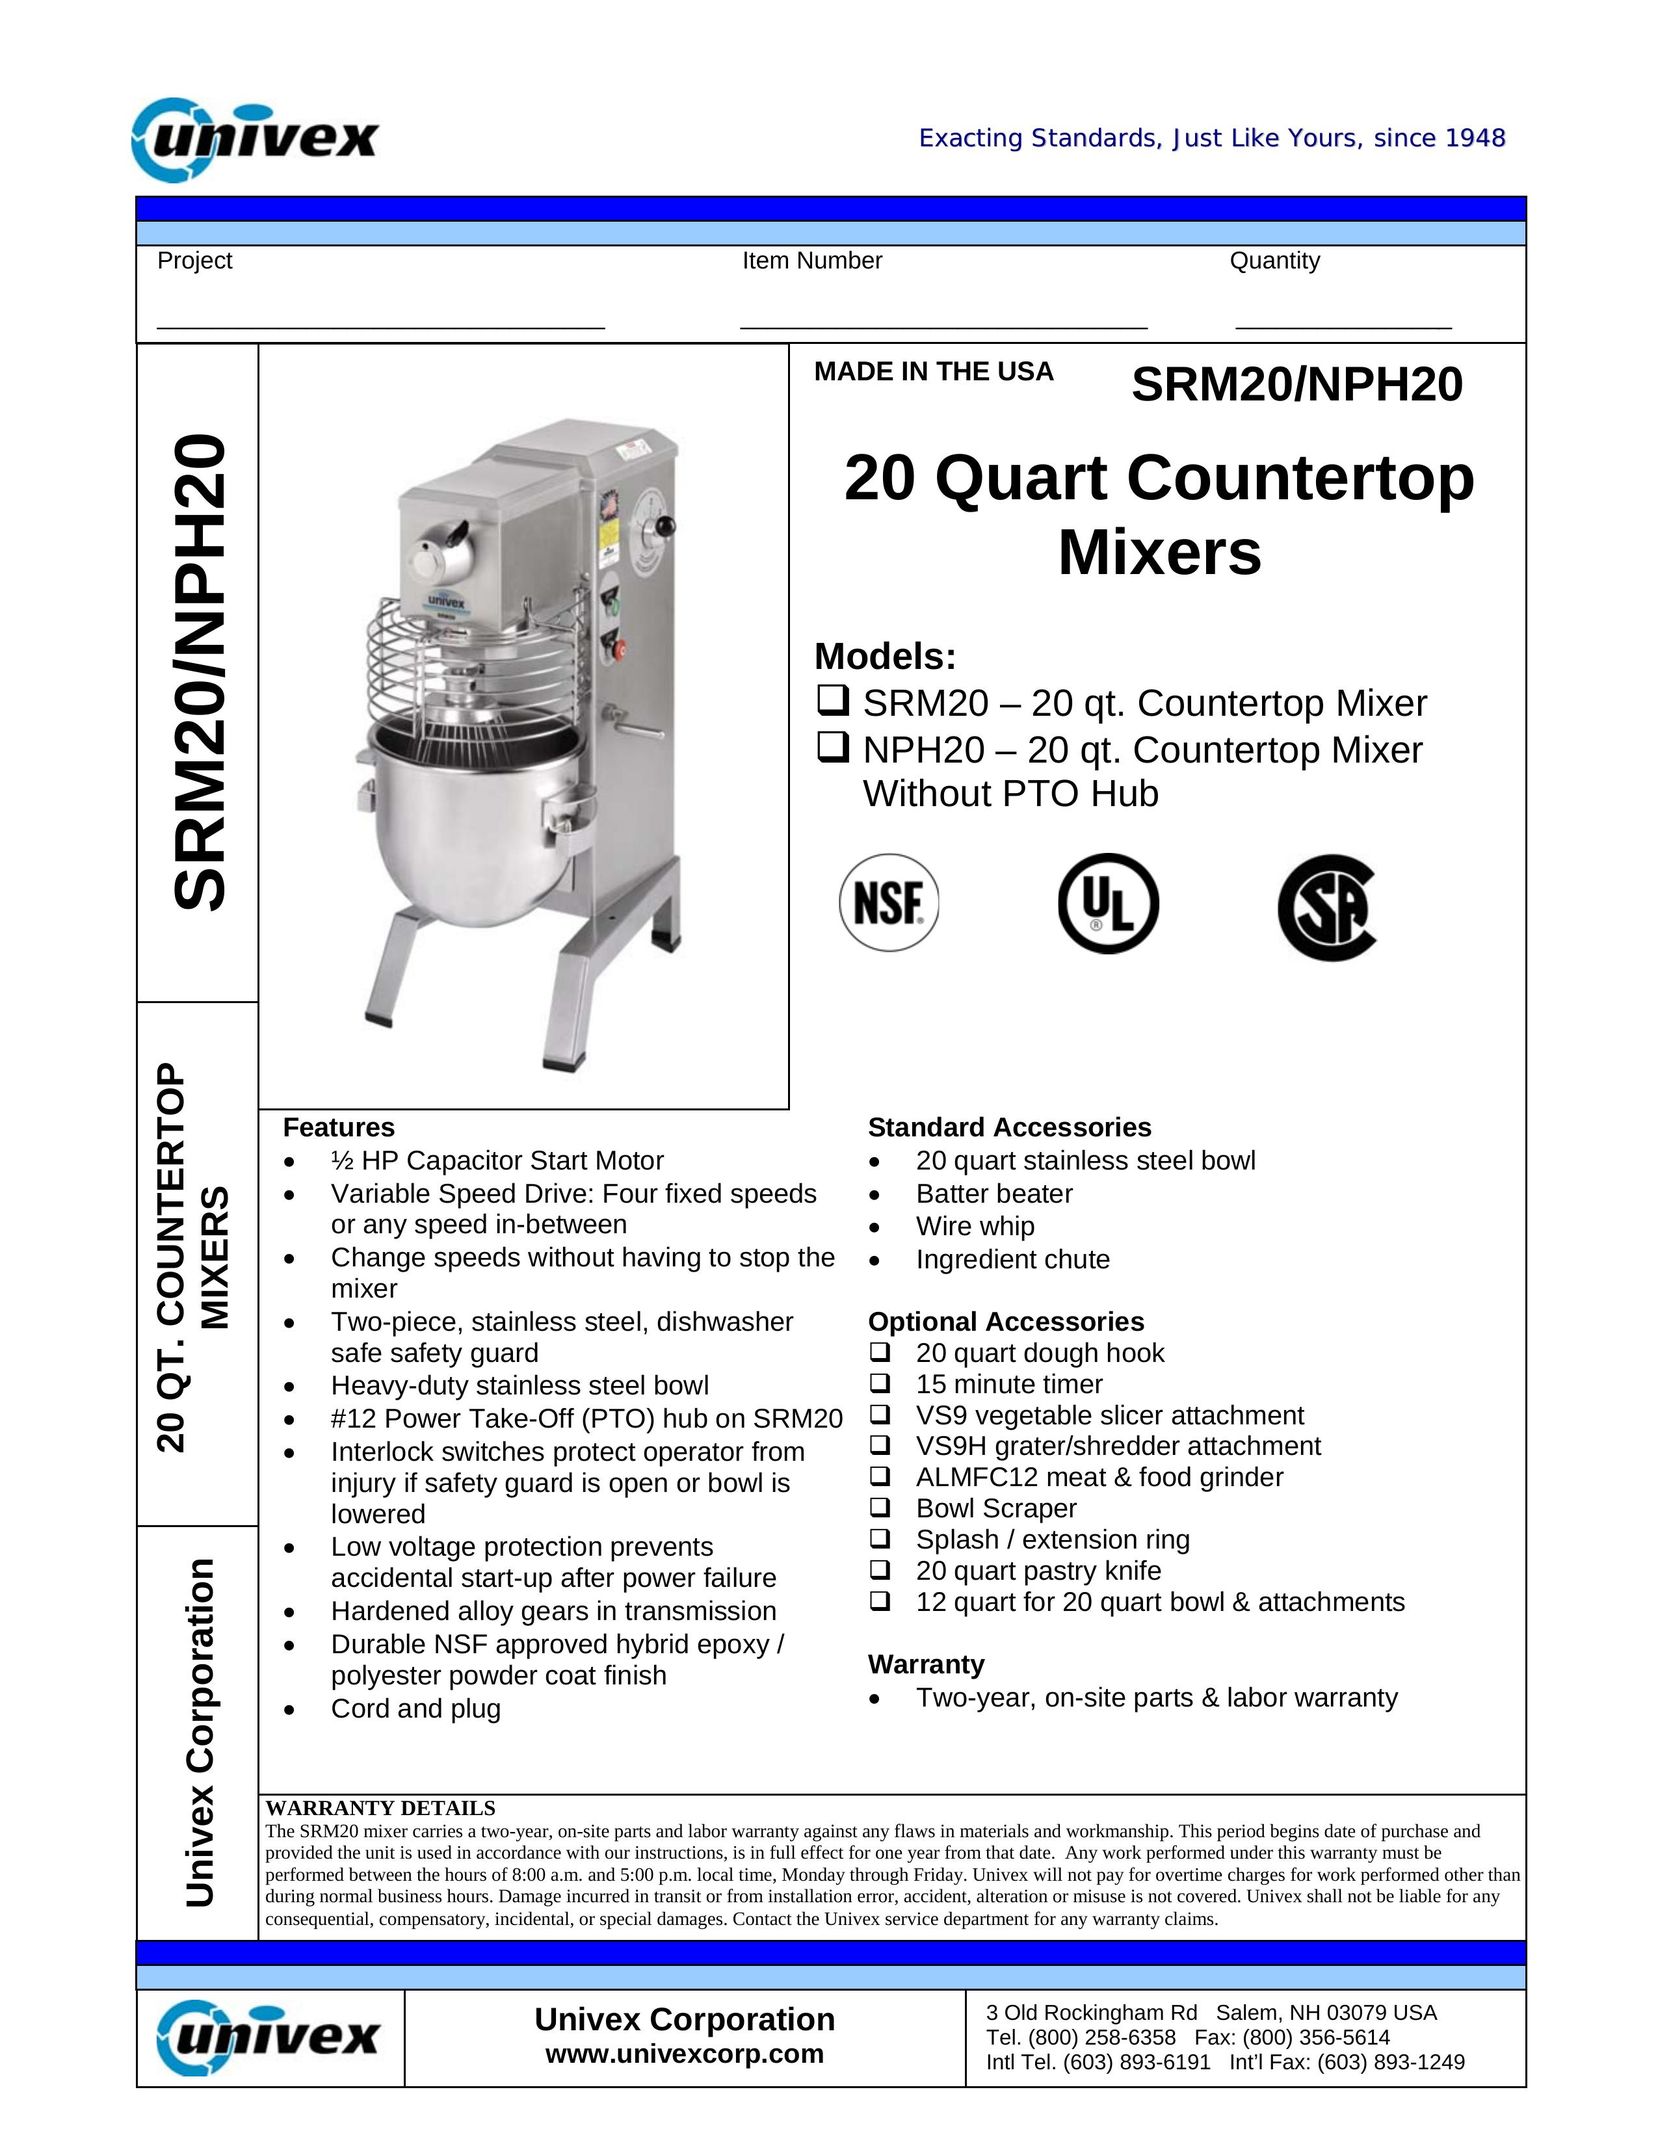 Univex SRM20 Mixer User Manual